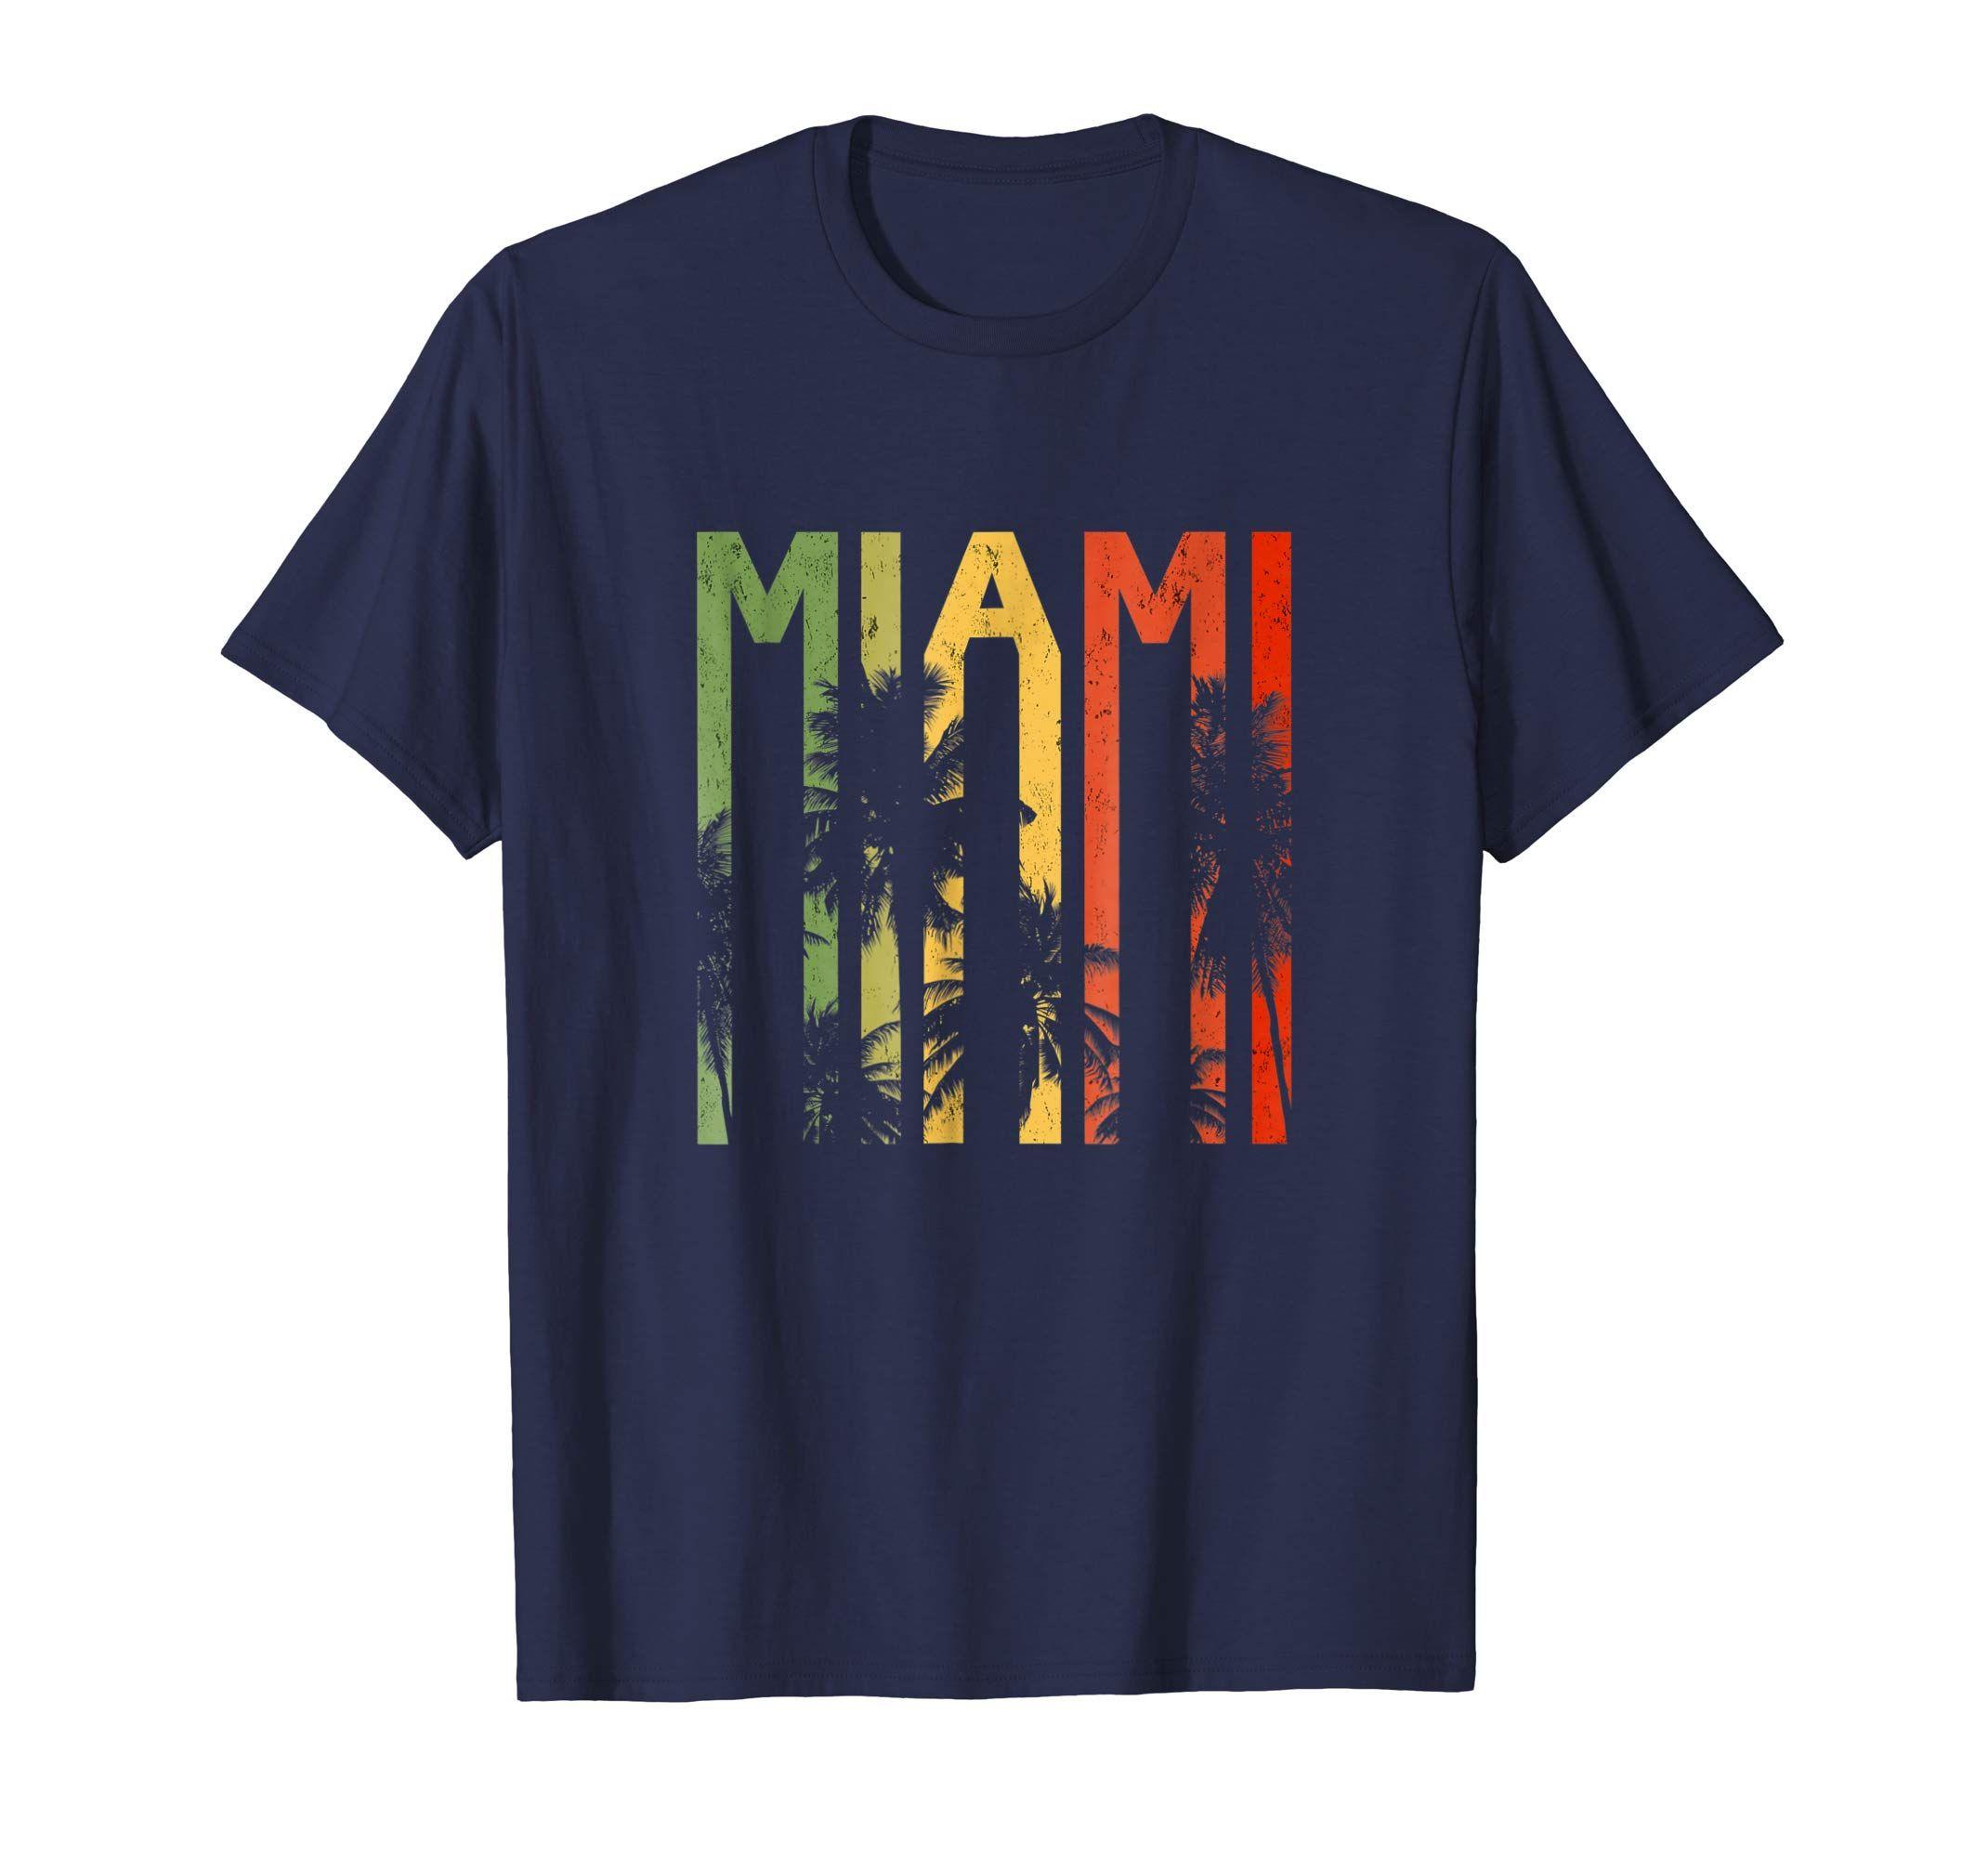 Beach Apparel Logo - Amazon.com: Miami Vacation Souvenir Shirt - Retro Beach Apparel ...